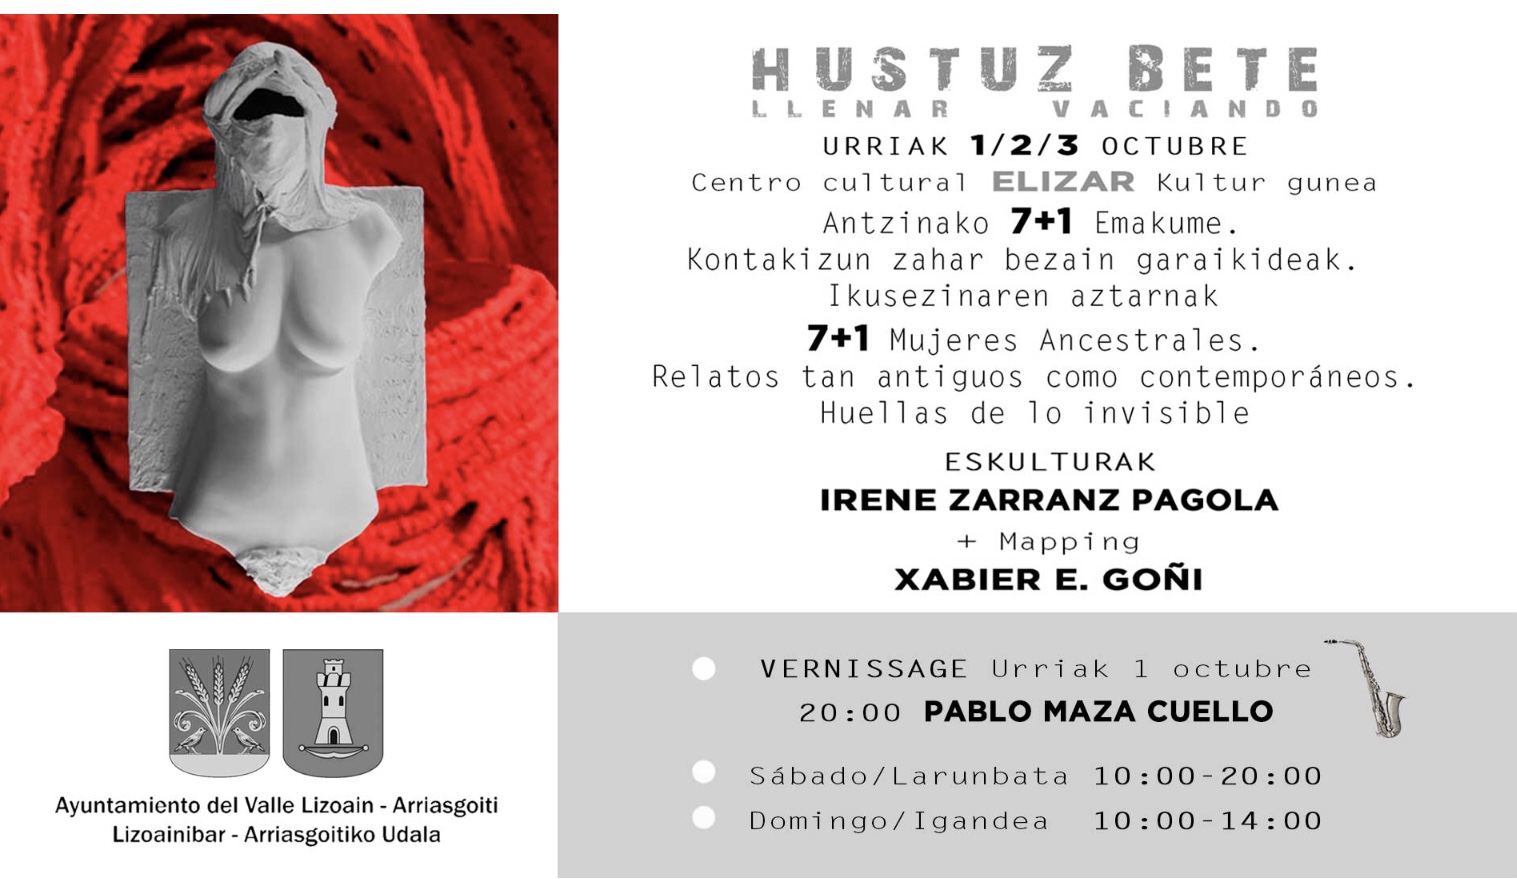 Exposición de escultura «Hustuz bete» en Elizar, Lizoain/»Hustuz bete» eskultura erakusketa Elizarren, Lizoainen